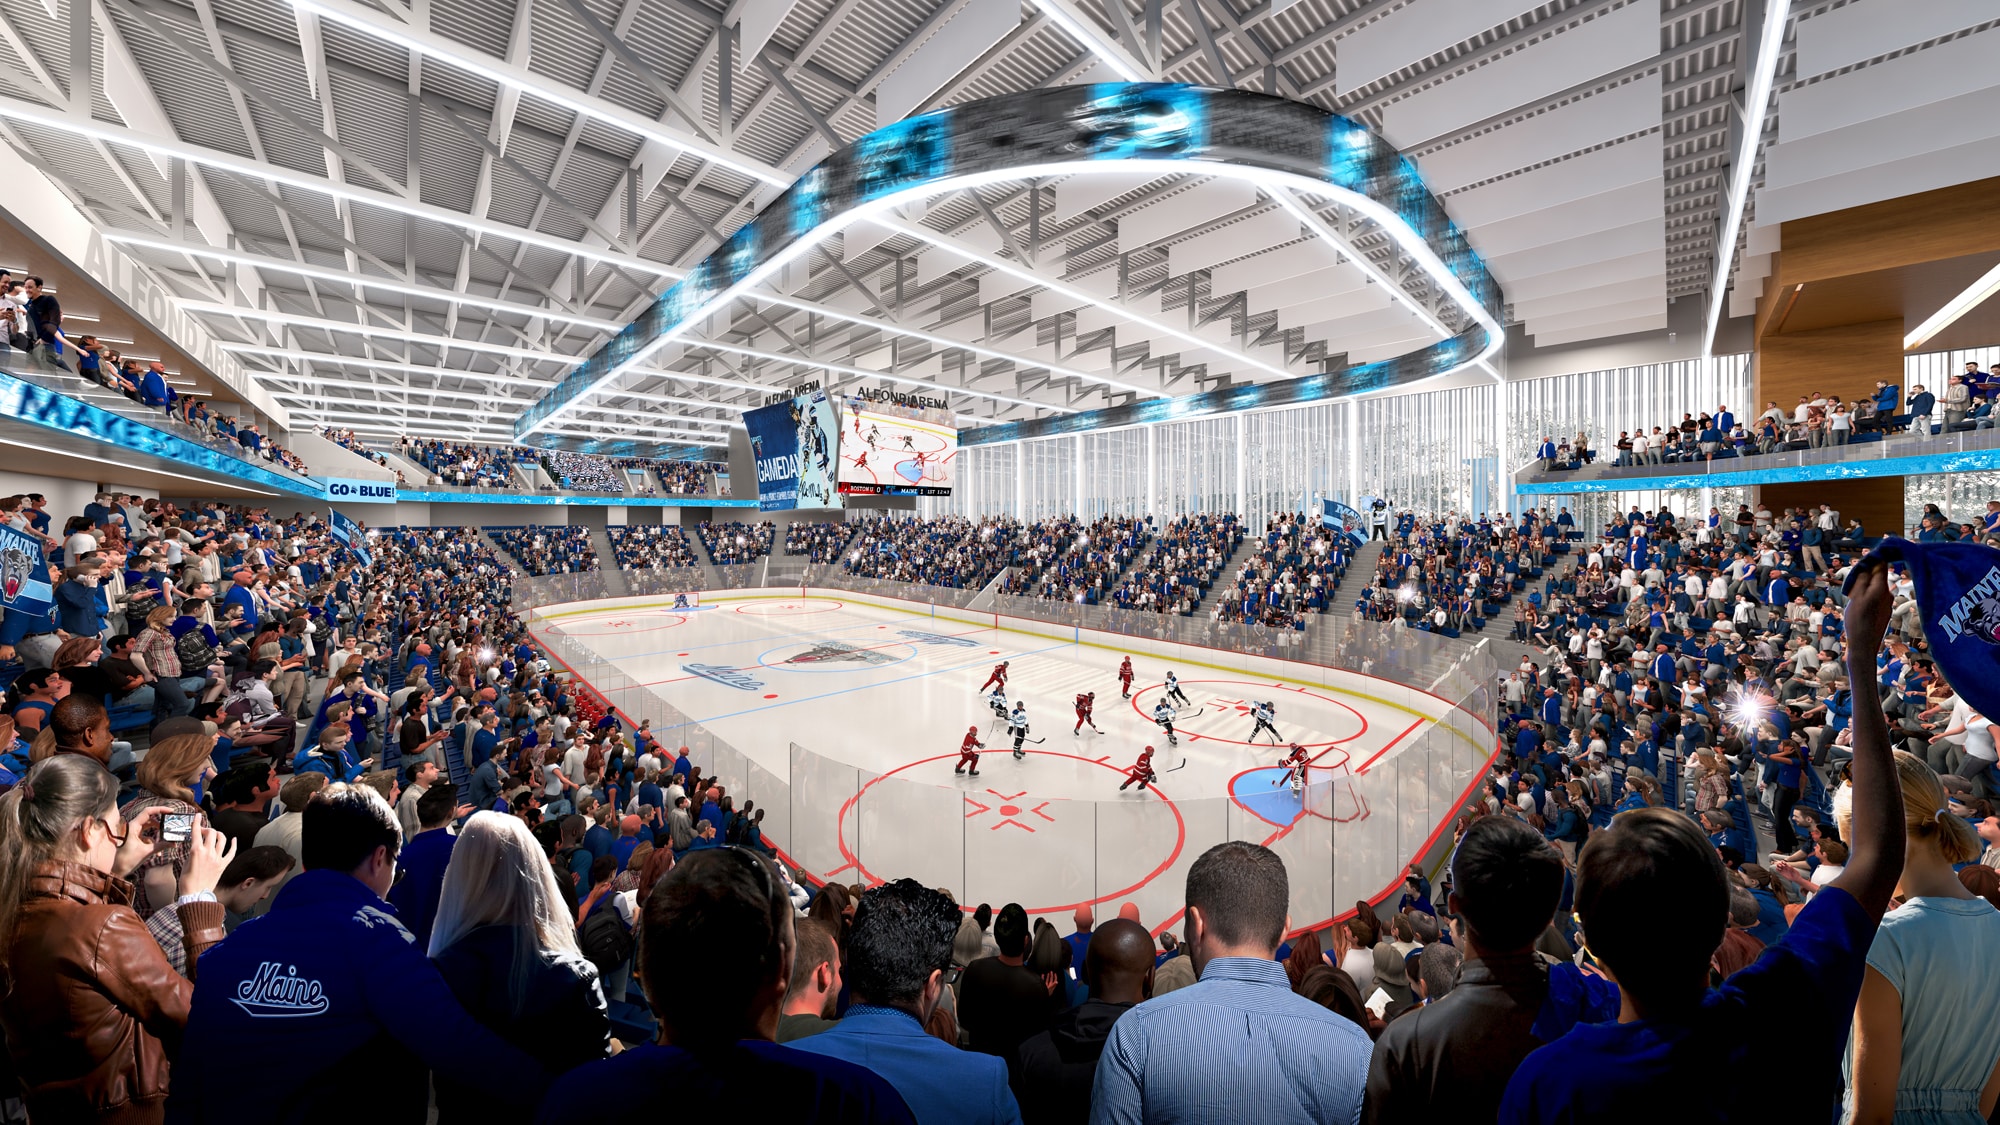 University of Maine Ice Arena